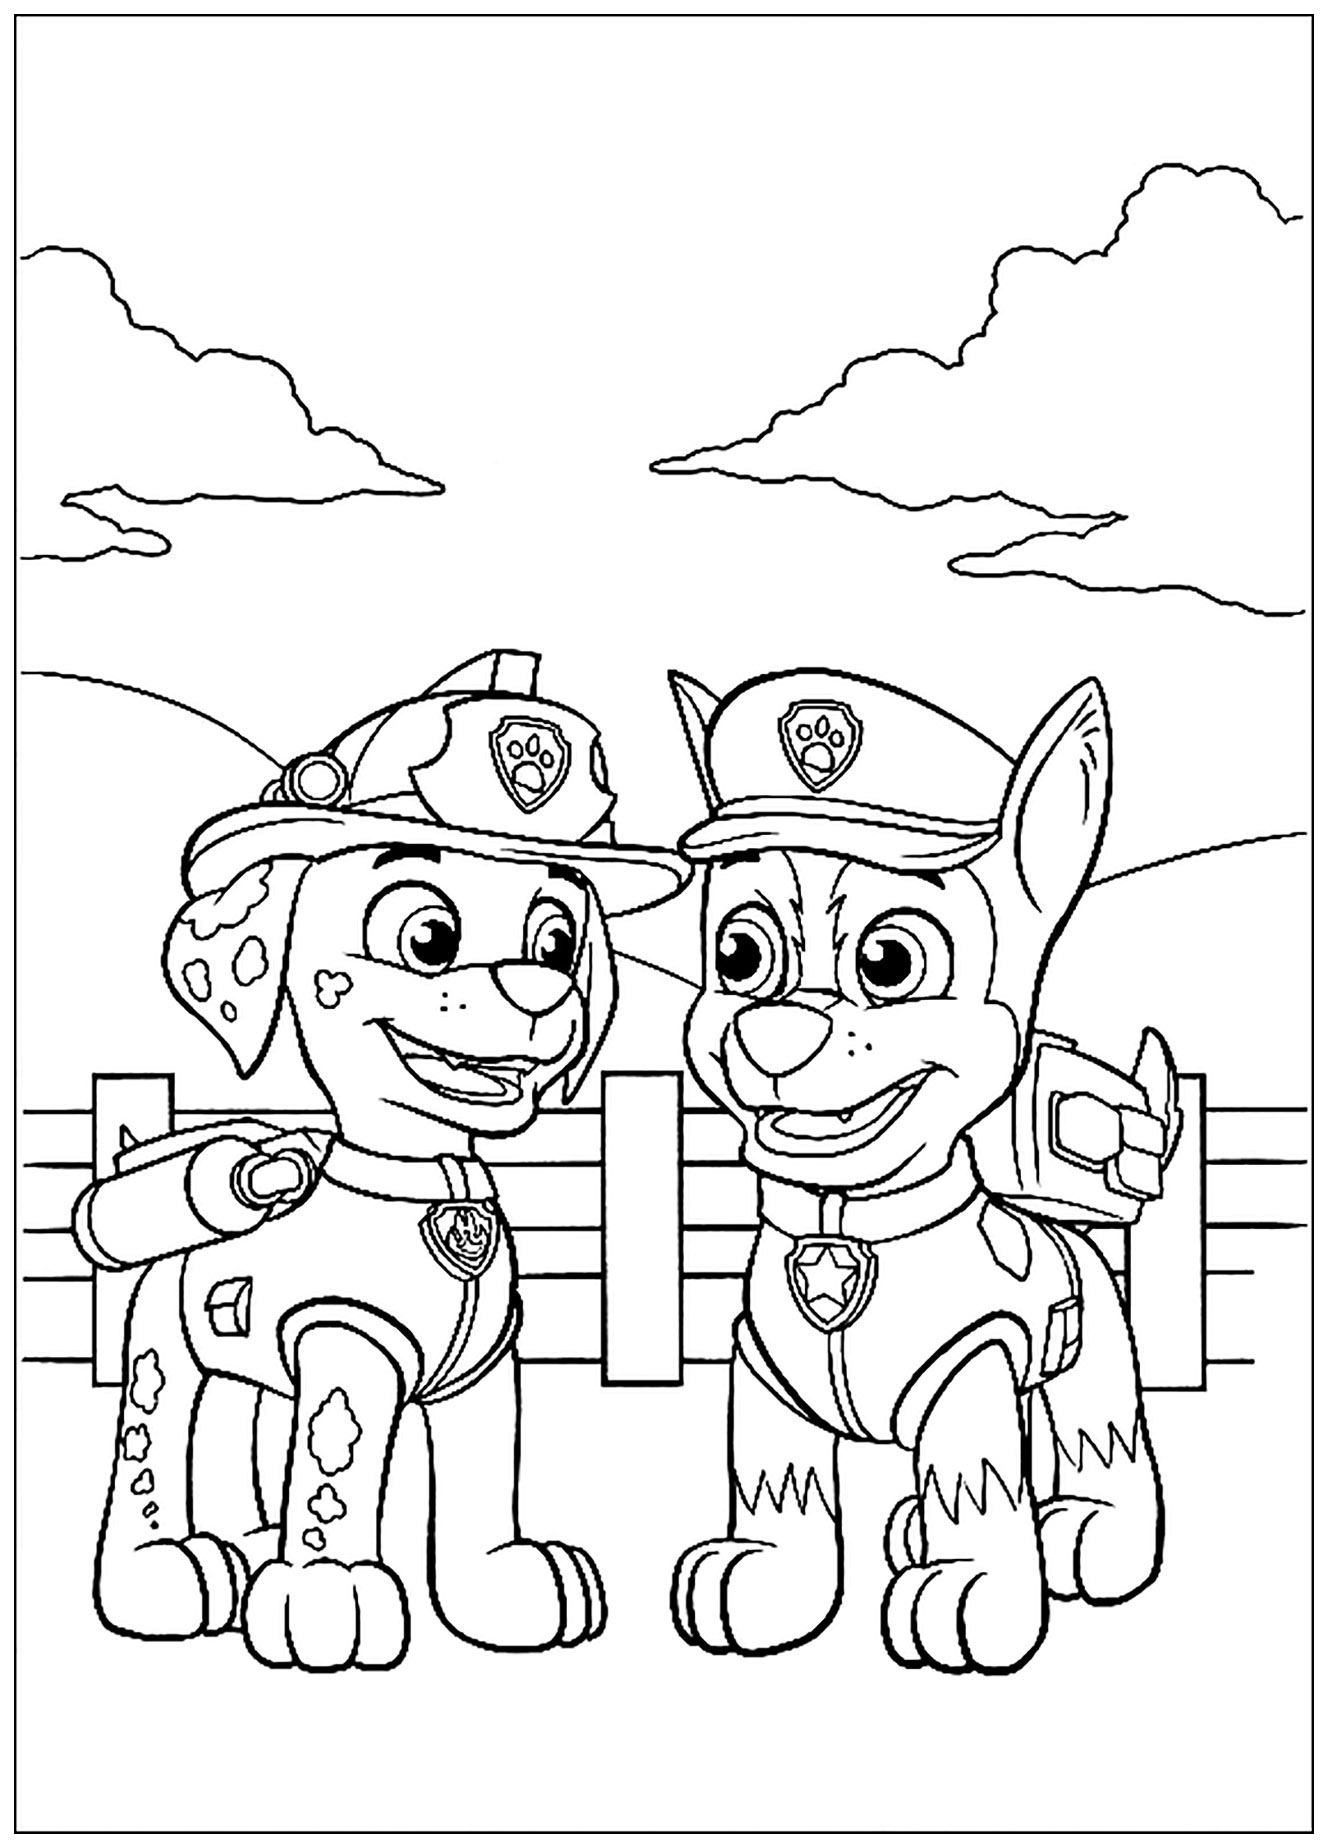 PAW Patrol páginas para colorear, fácil Patrulla de cachorros para los niños